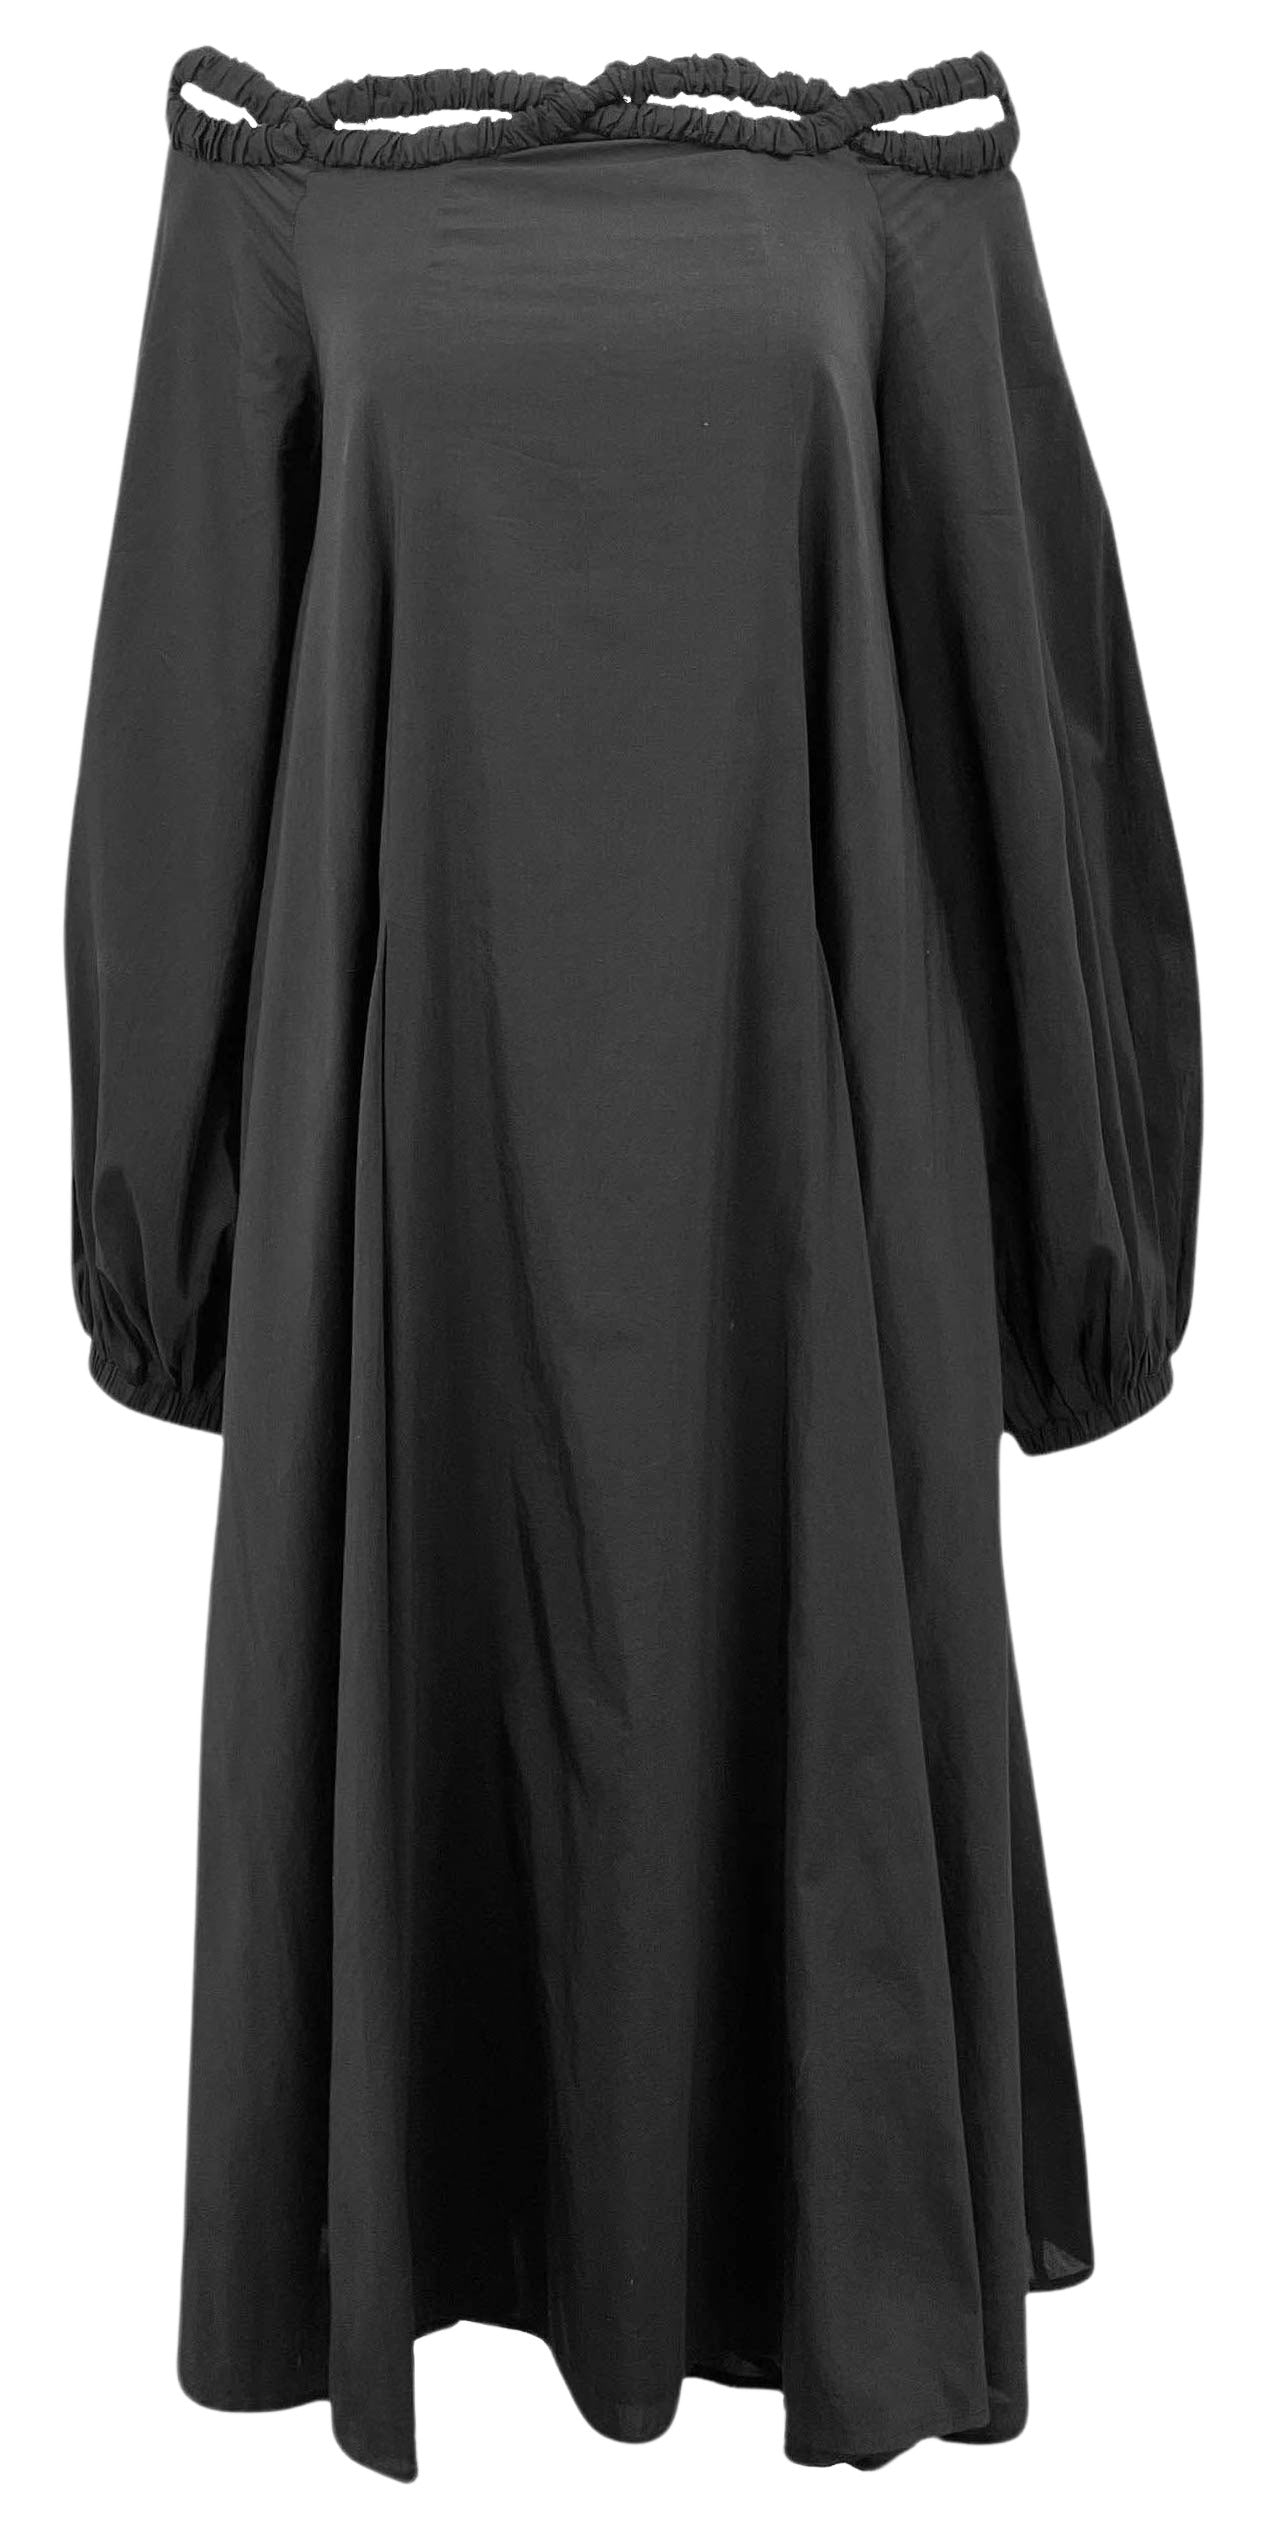 Merlette Louis Dress in Black - Discounts on Merlette at UAL